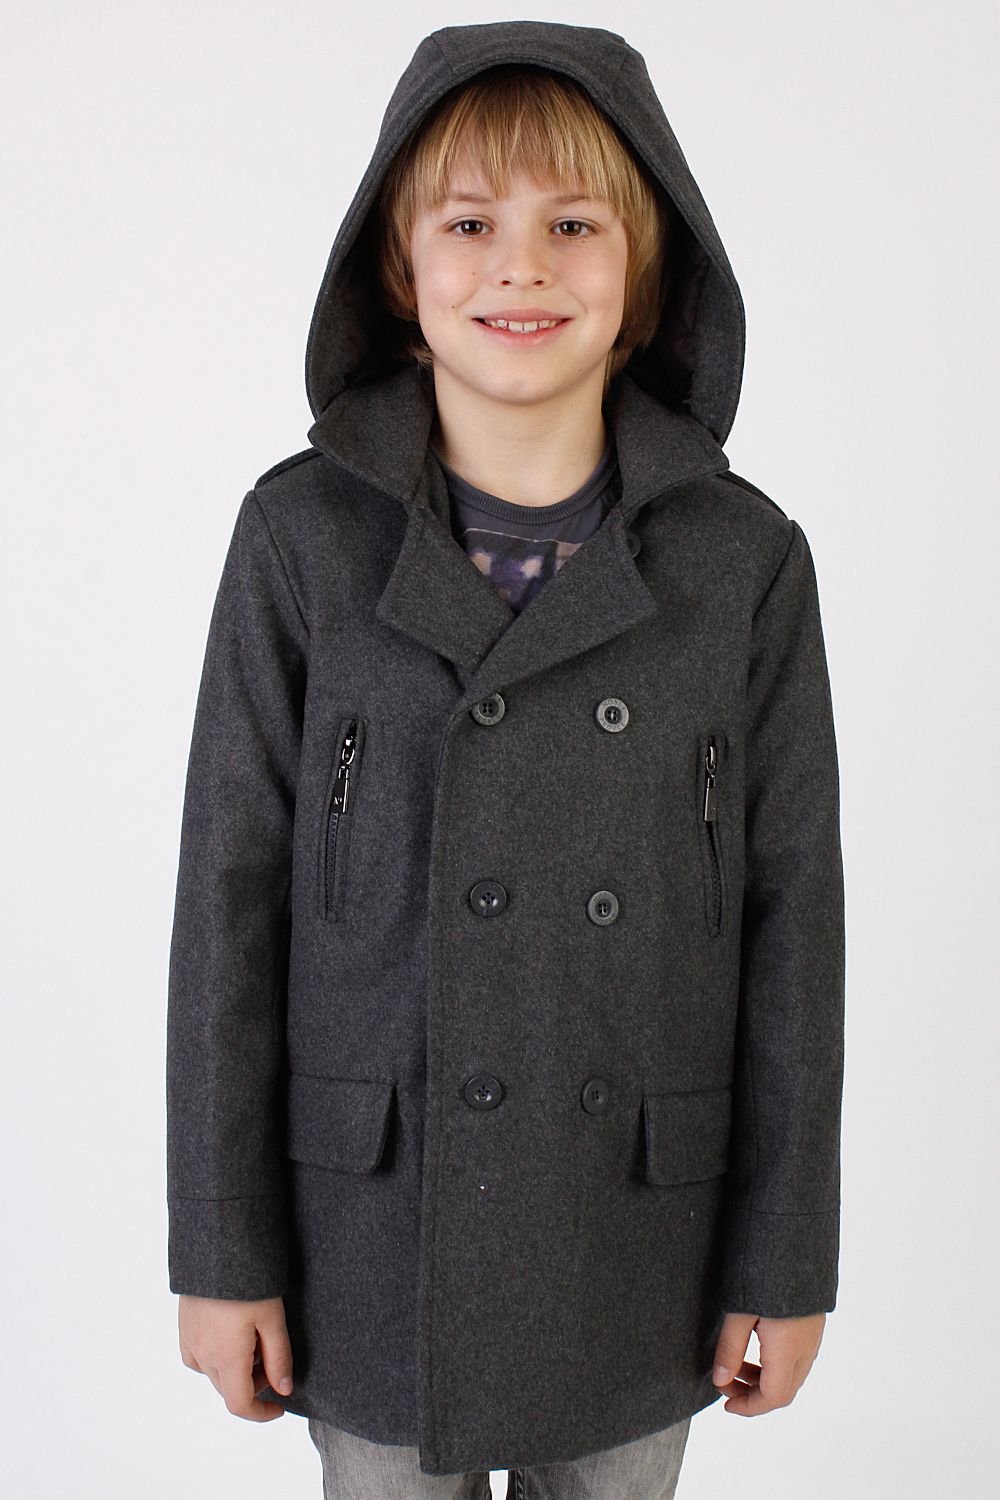 Пальто для подростка мальчика. Пальто Нобле пипл для мальчиков. Noble people пальто для мальчика. Пальто для подростка.